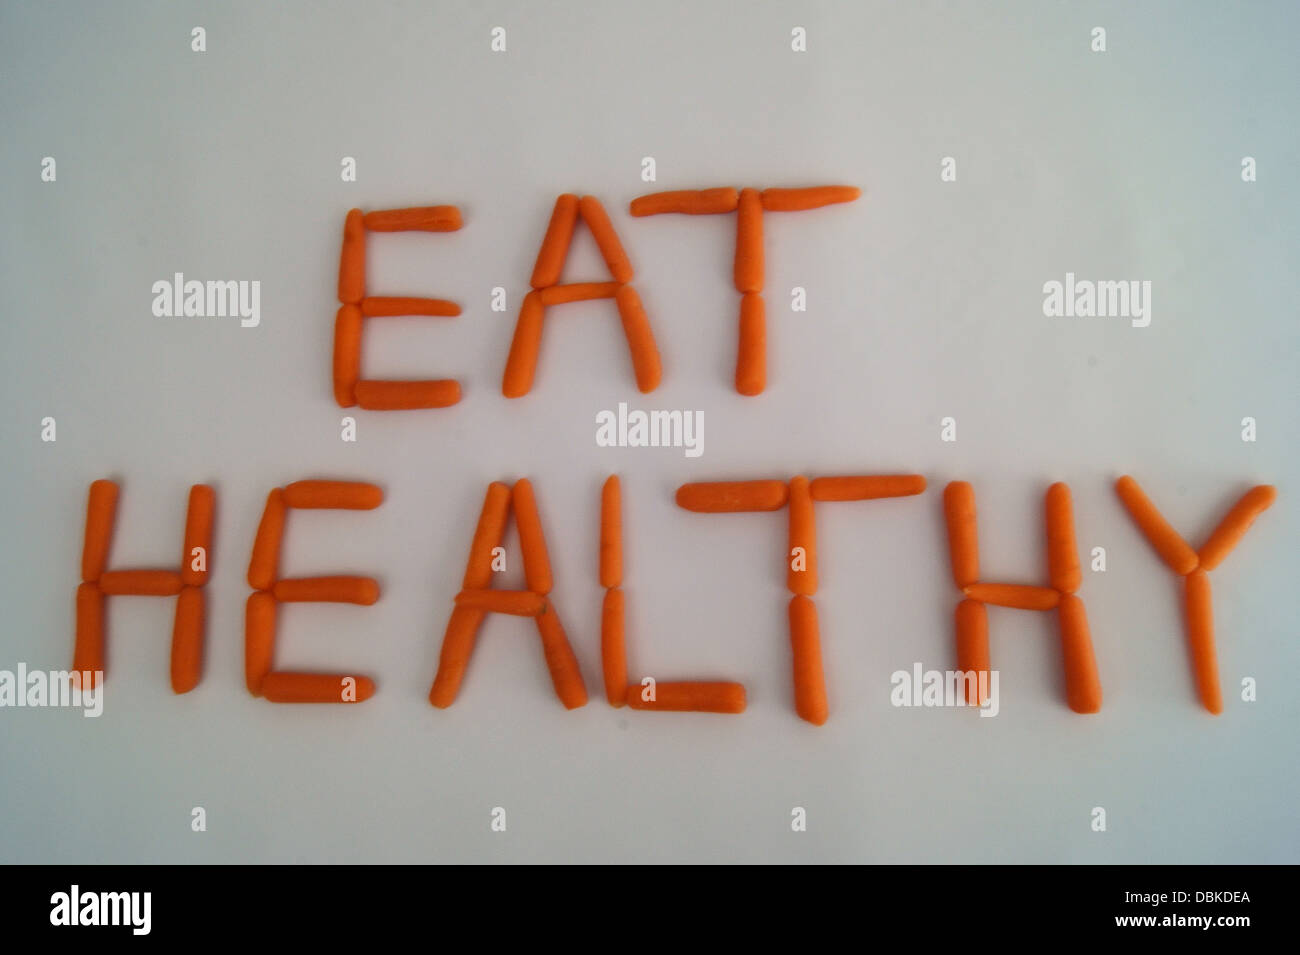 Manger sain écrit avec des carottes sur fond blanc Banque D'Images